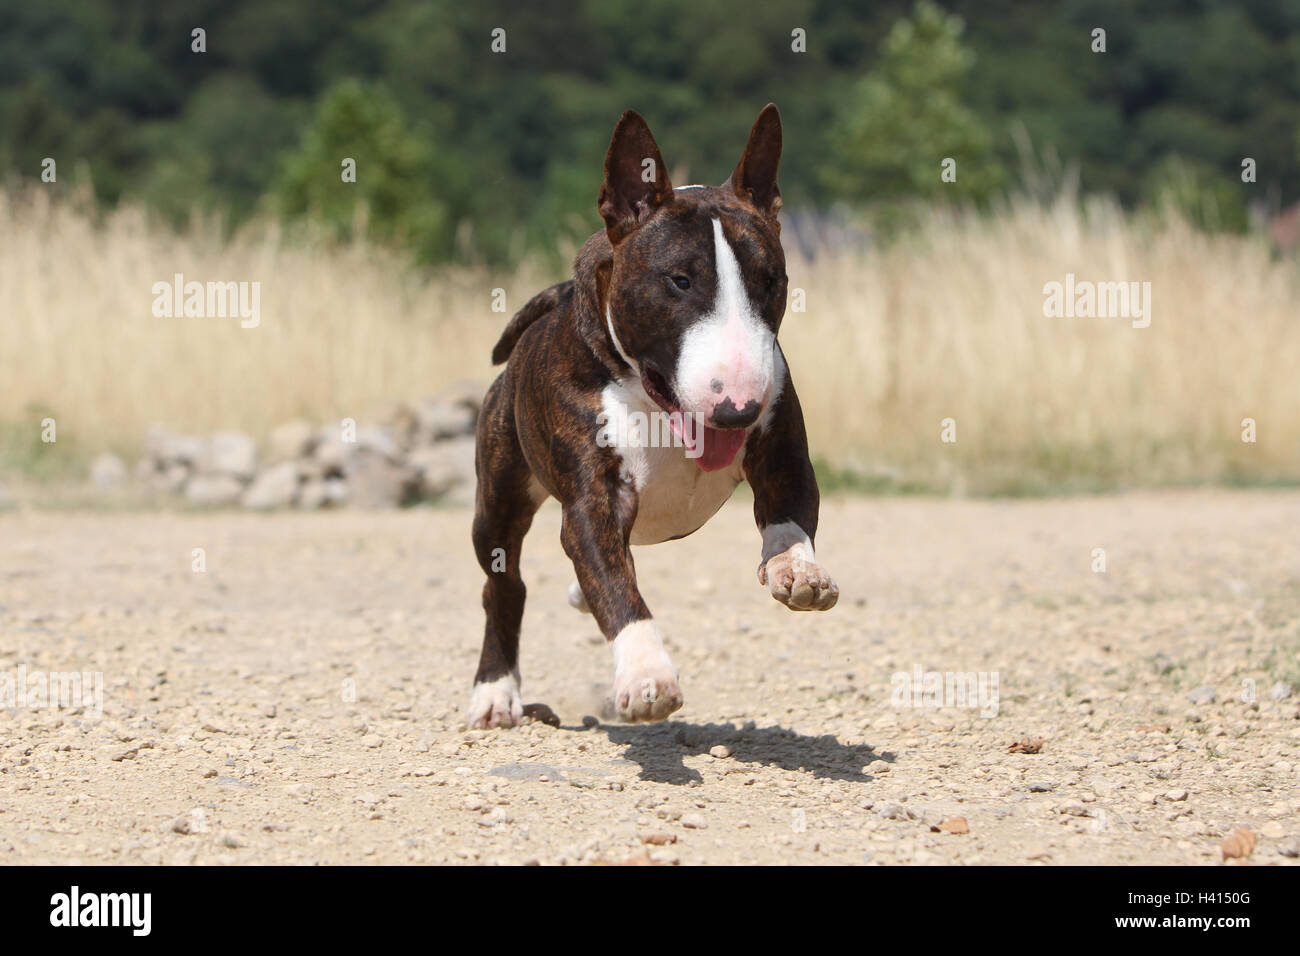 Dog Bull Terrier Anglais / bully / Gladator brindle, lors de l'exécution face portrait attentif Banque D'Images